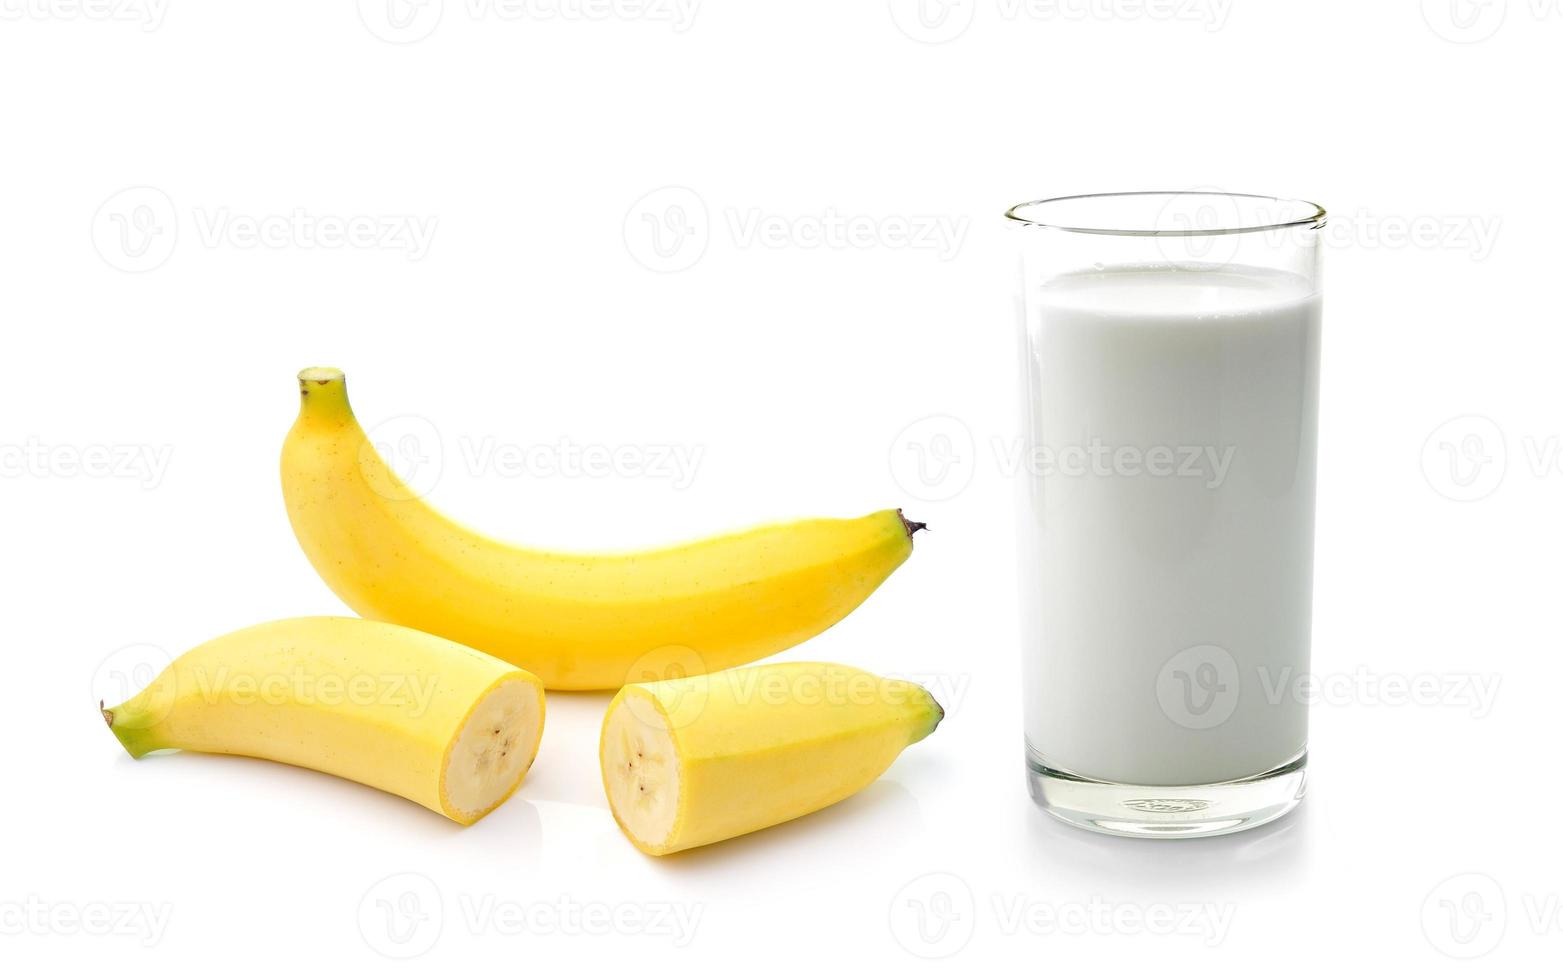 Vaso de leche con plátano sobre fondo blanco. foto